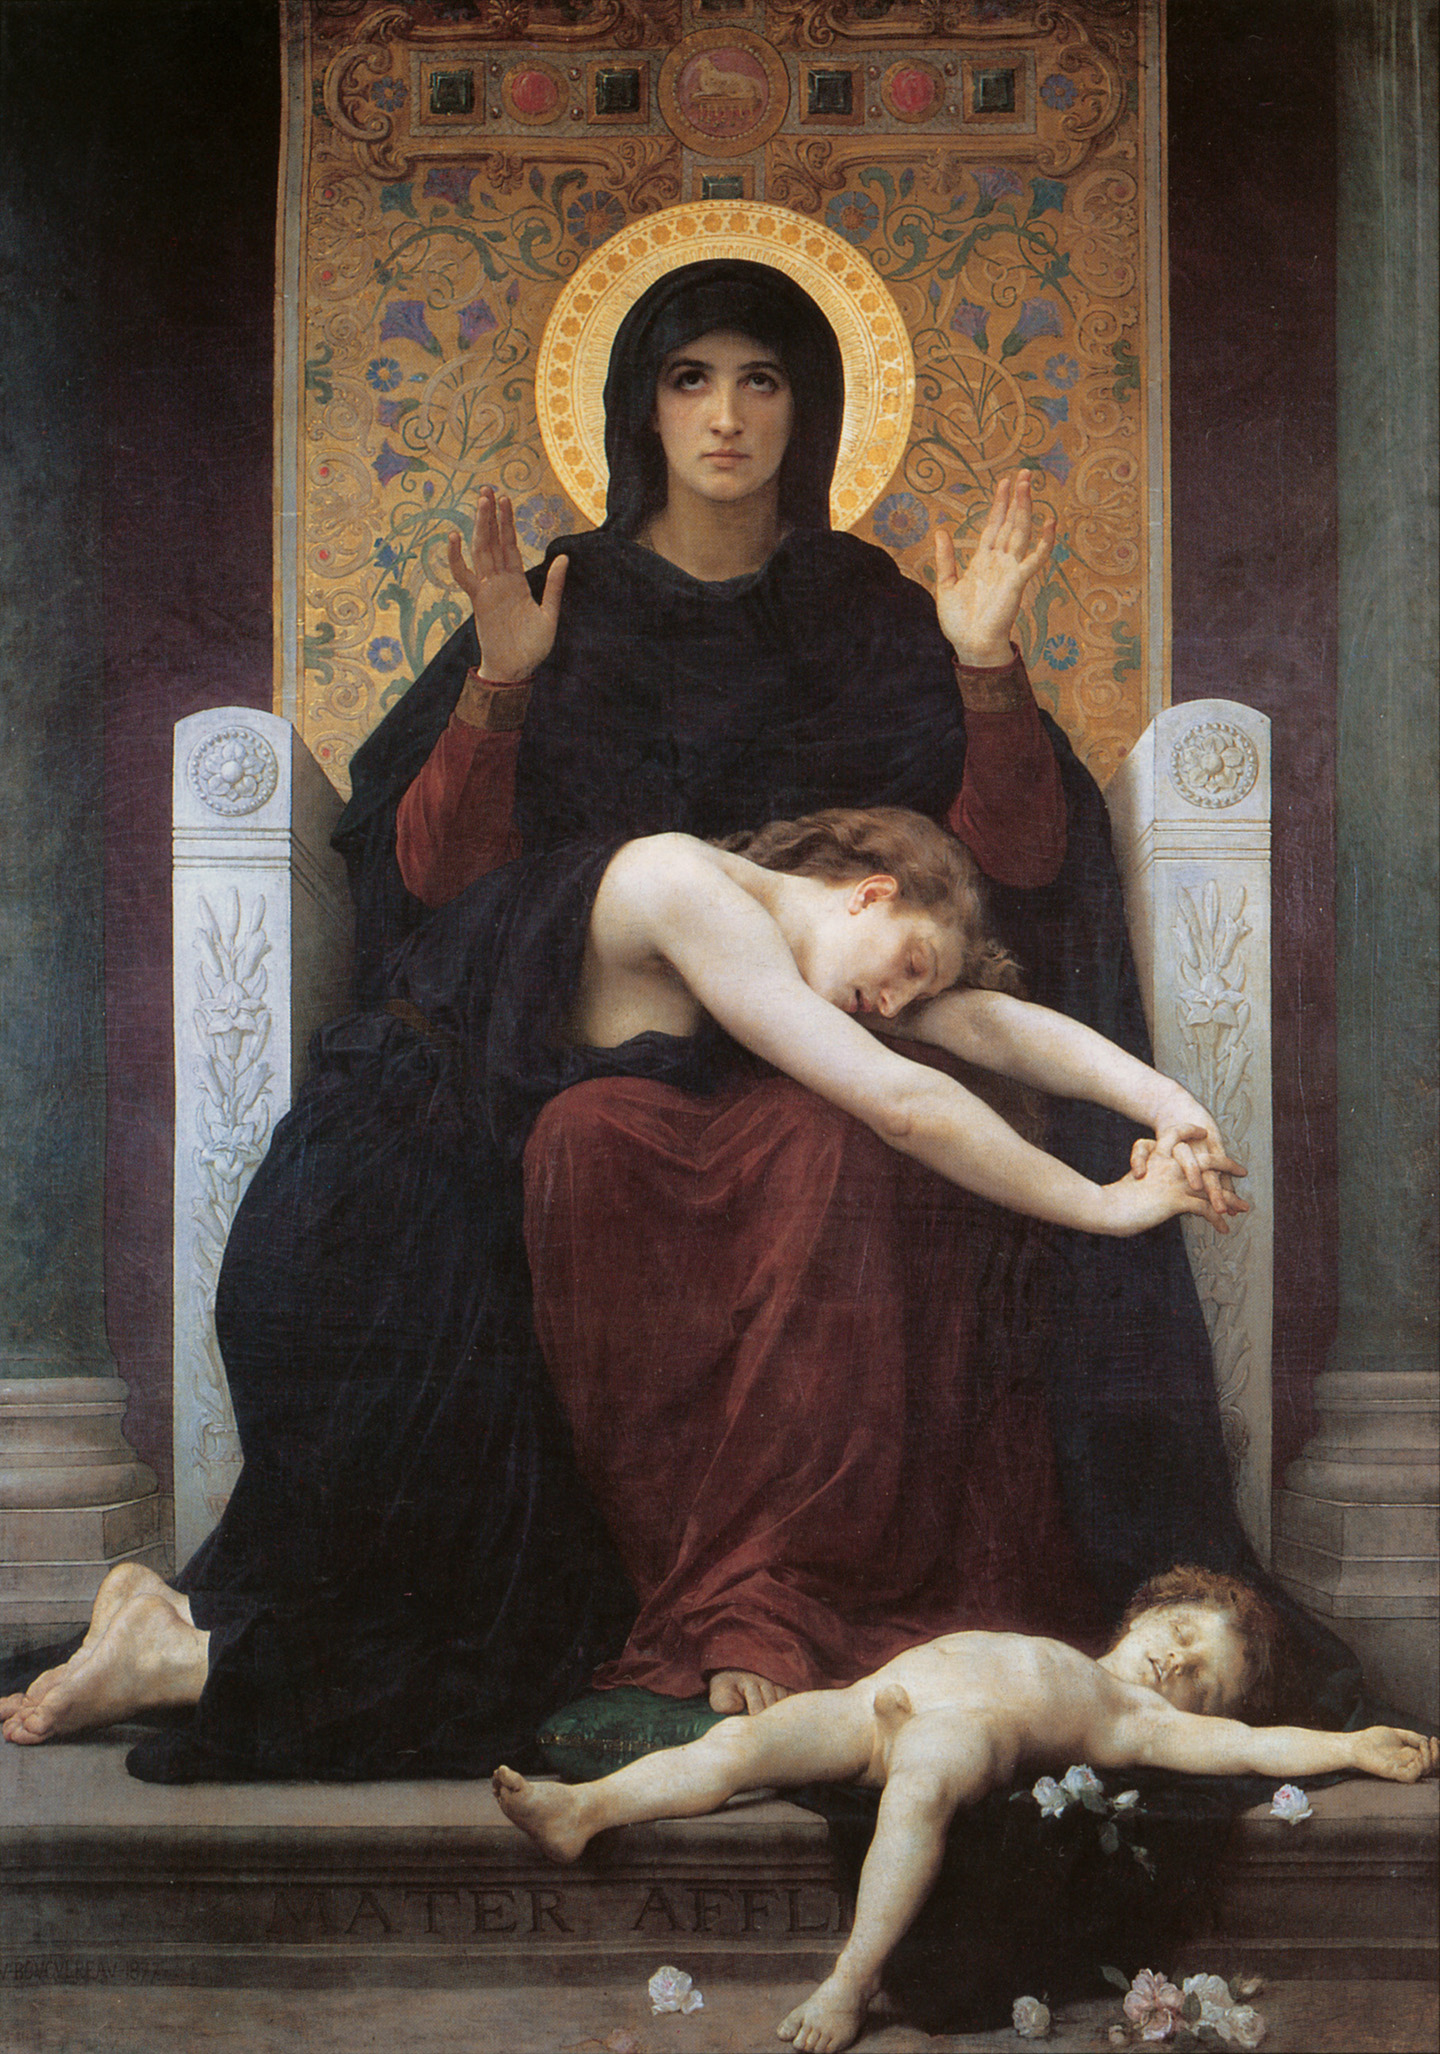 Tác phẩm “The Virgin of Consolation”, năm 1875, vẽ bởi họa sĩ William Adolphe Bouguereau. Tranh sơn dầu trên vải canvas. Bảo tàng Mỹ thuật Strasbourg, Pháp quốc. (Ảnh: Tài liệu công cộng)